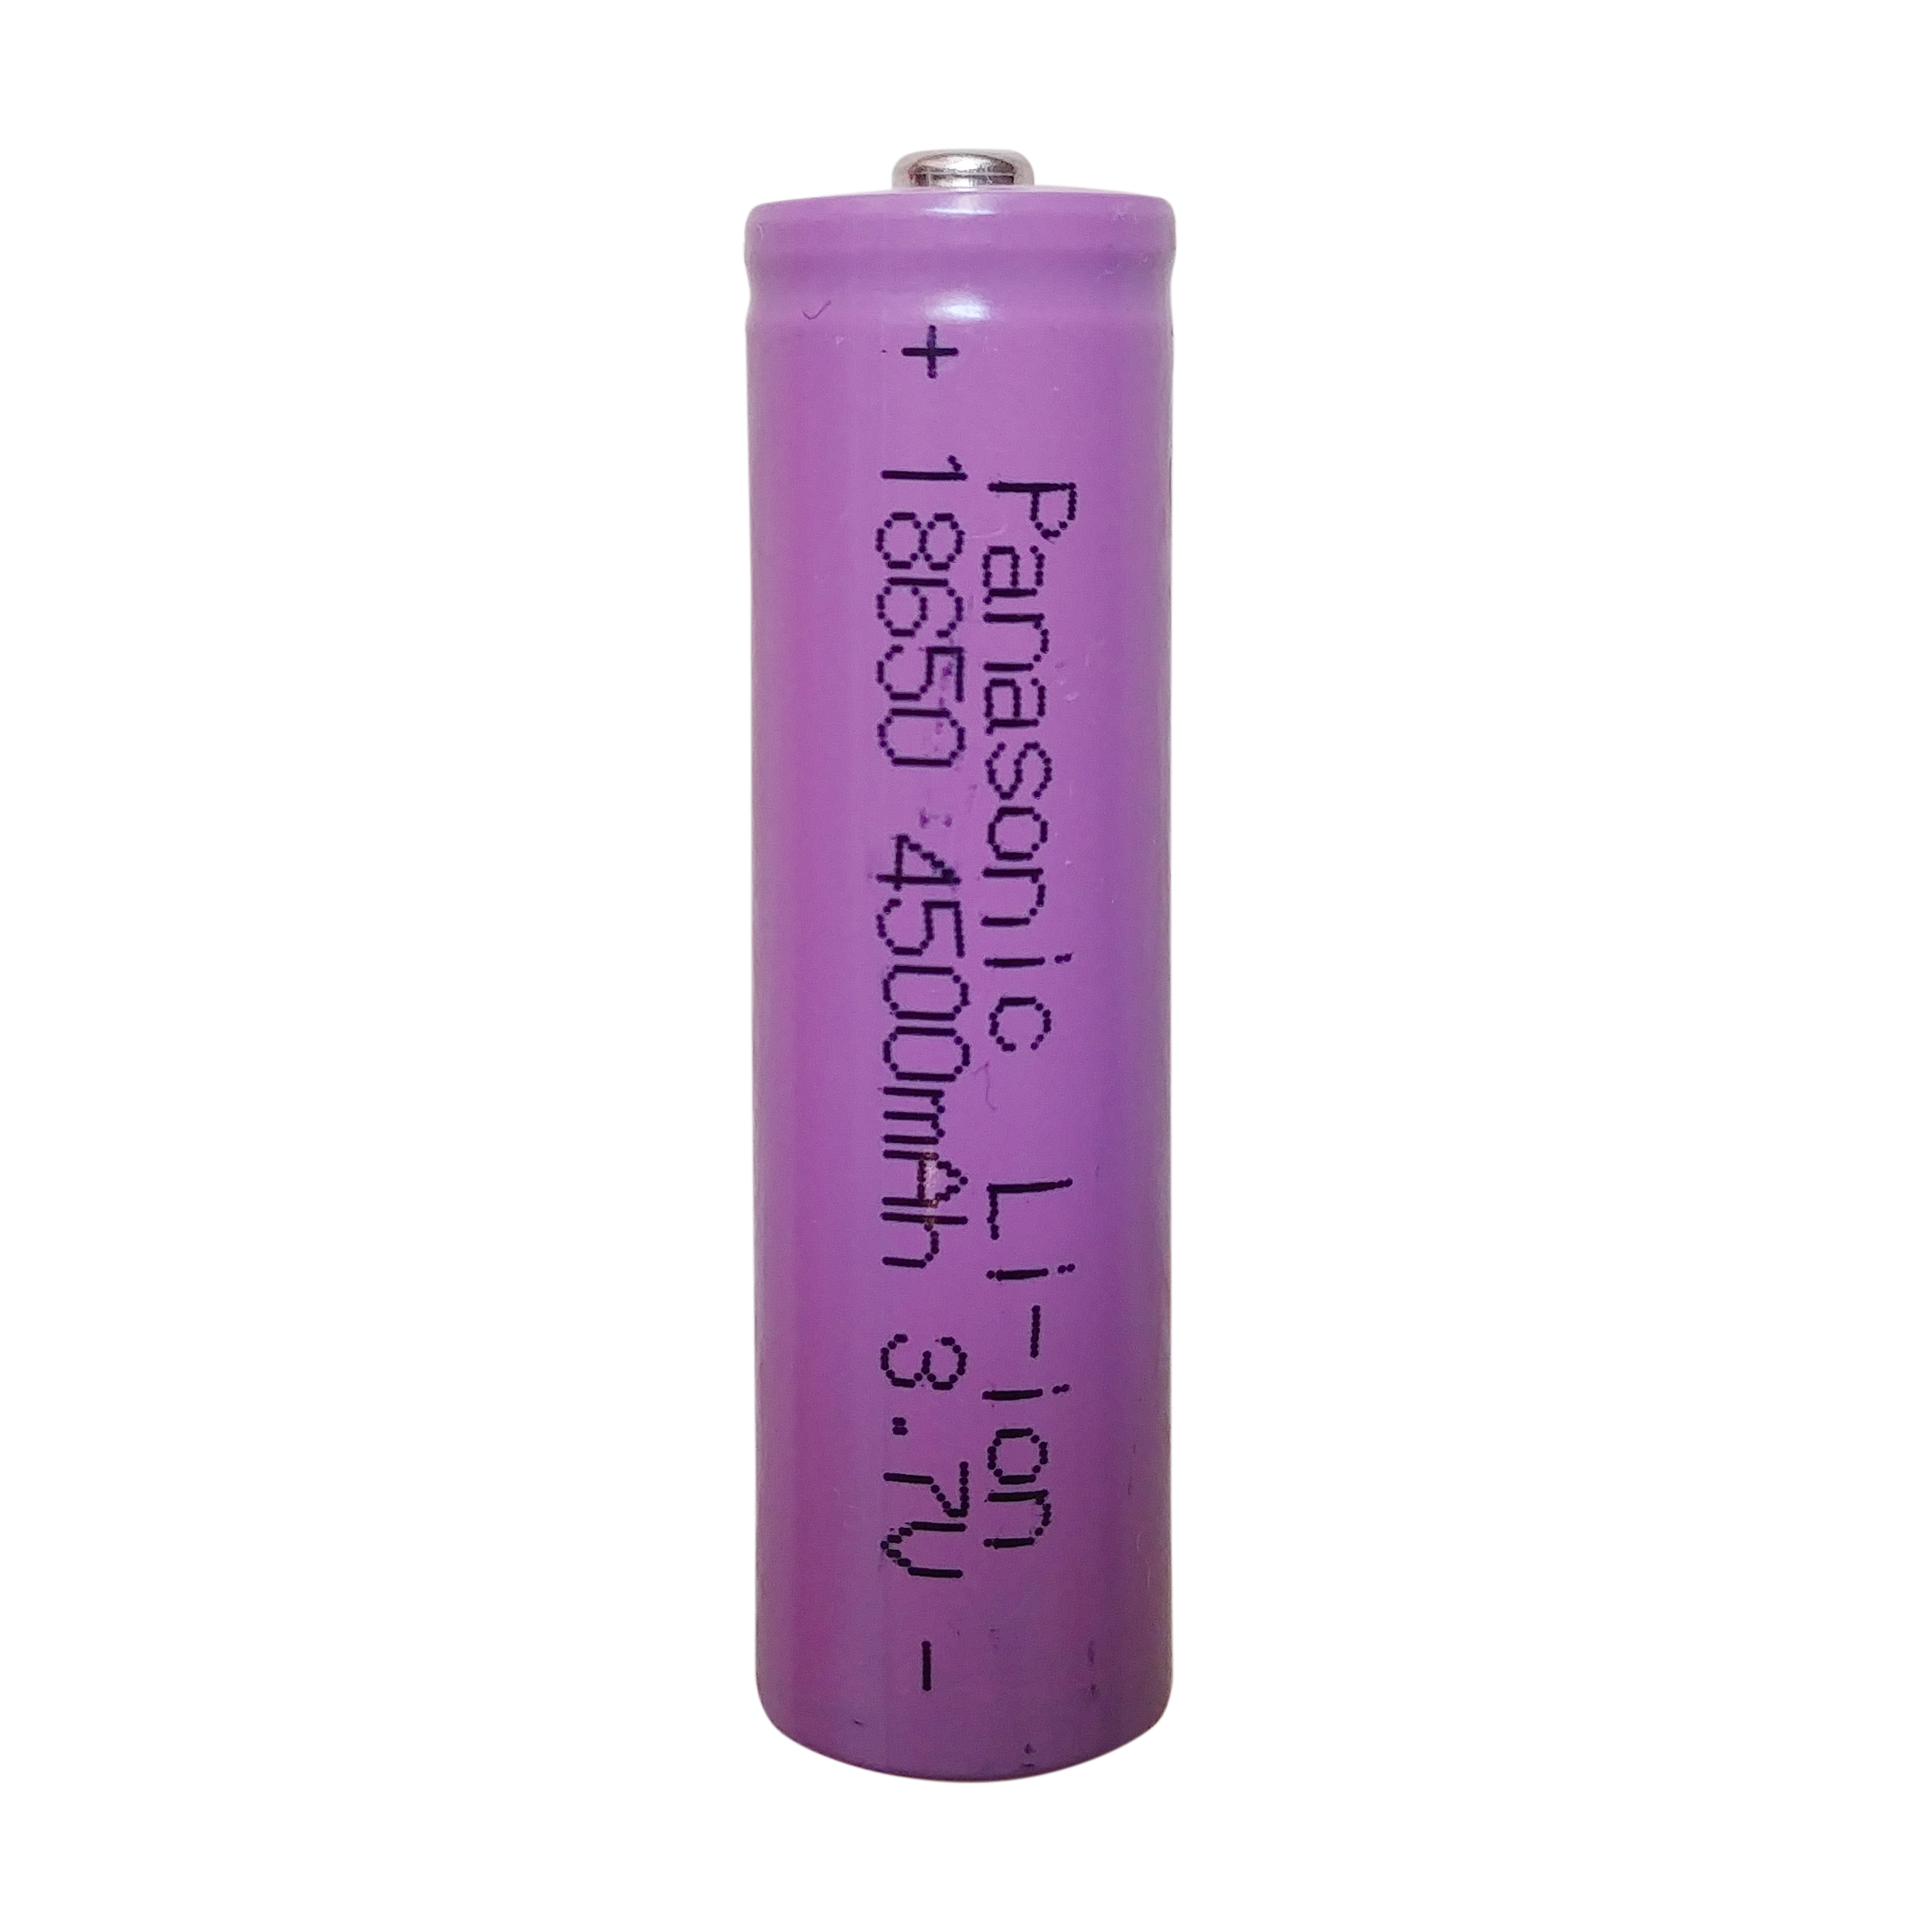 باتری لیتیوم-یون قابل شارژ پاناسونیک کد 18650 ظرفیت 4500 میلی آمپرساعت بسته 4 عددی